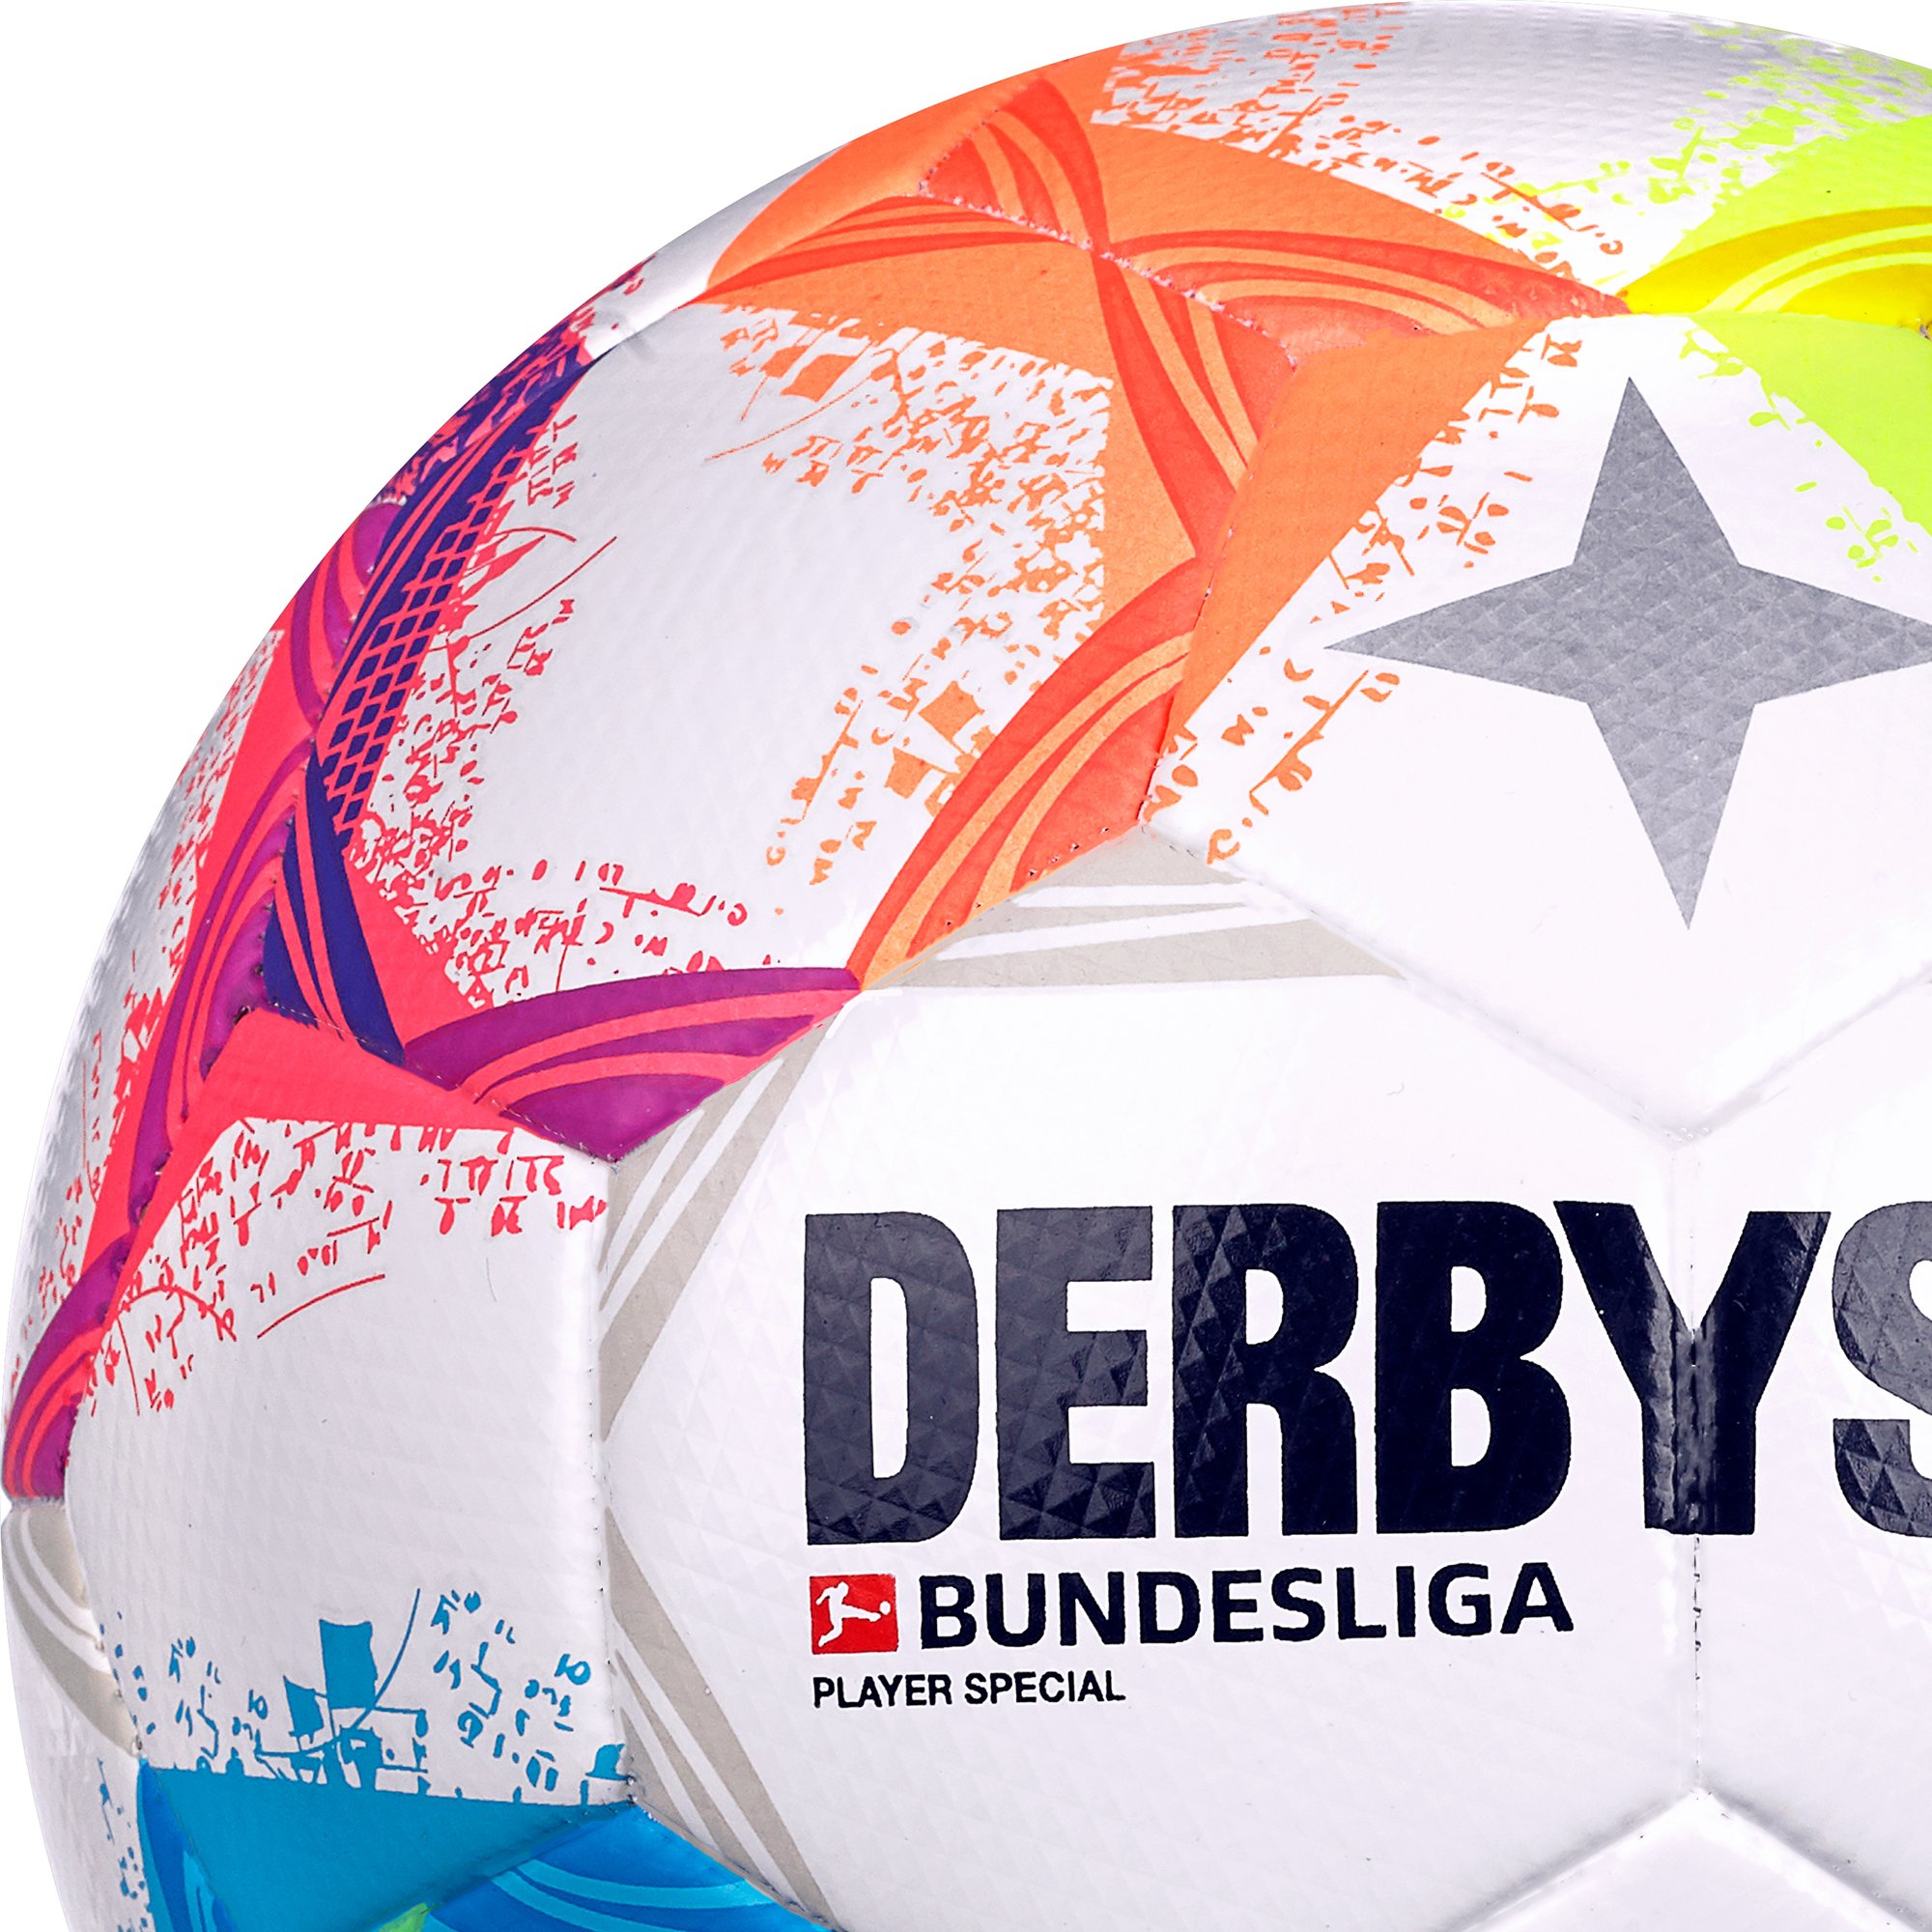 Derbystar Bundesliga Player Special v22